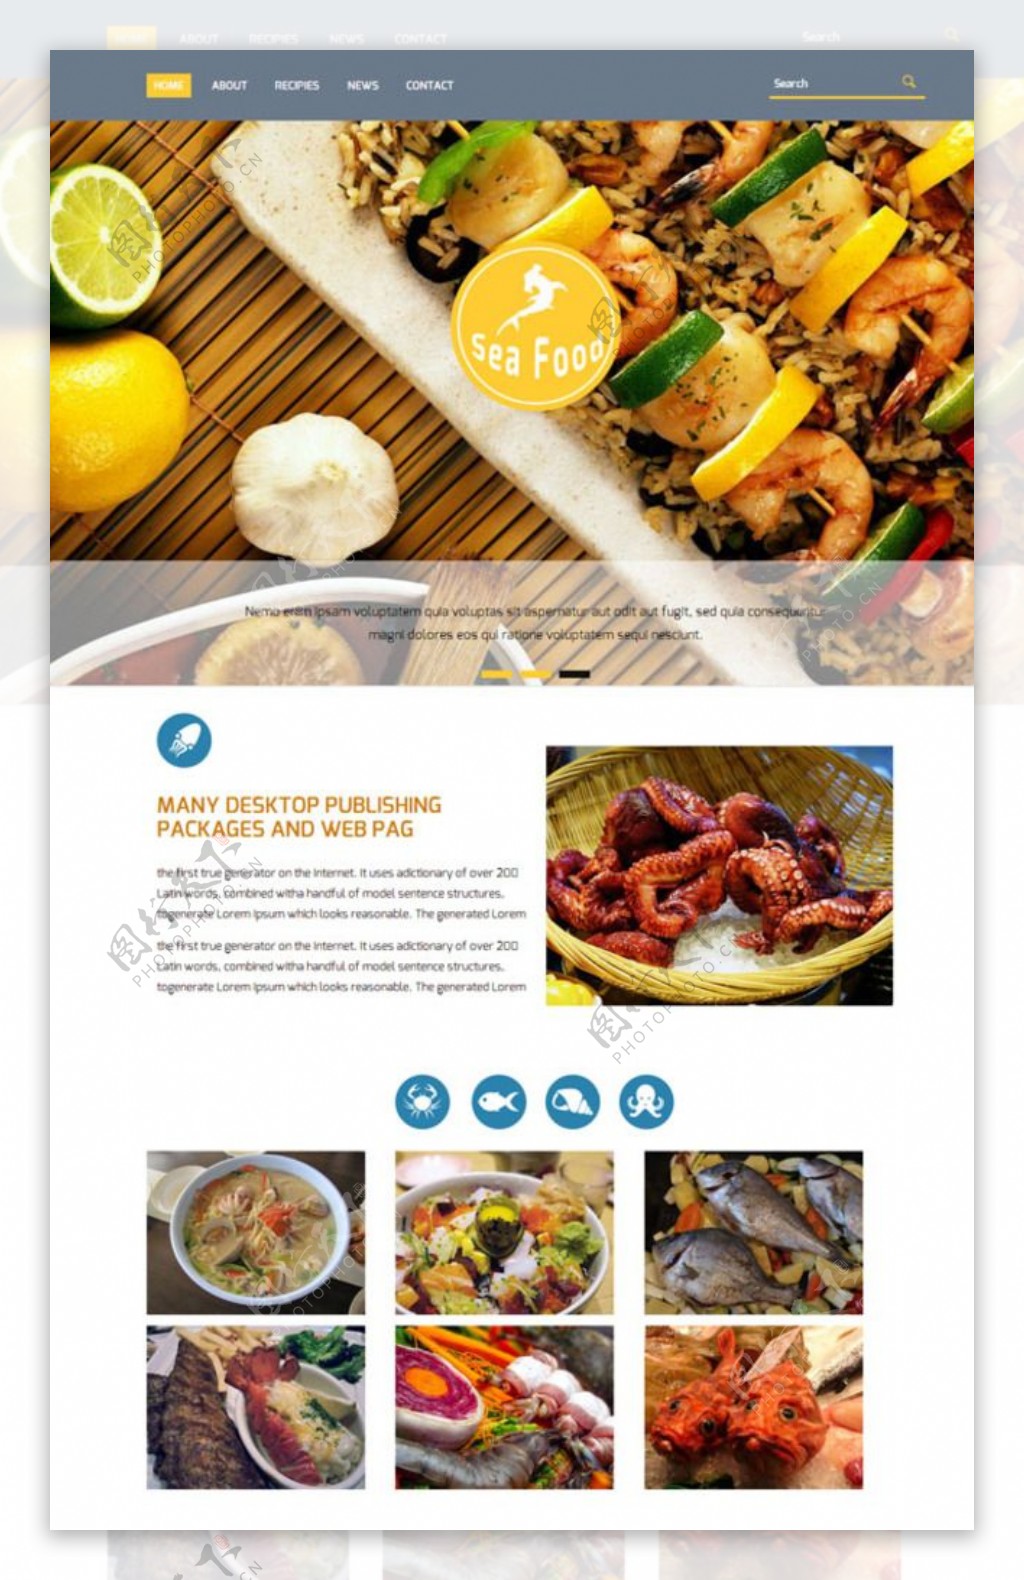 海鲜餐饮美食网站模板图片